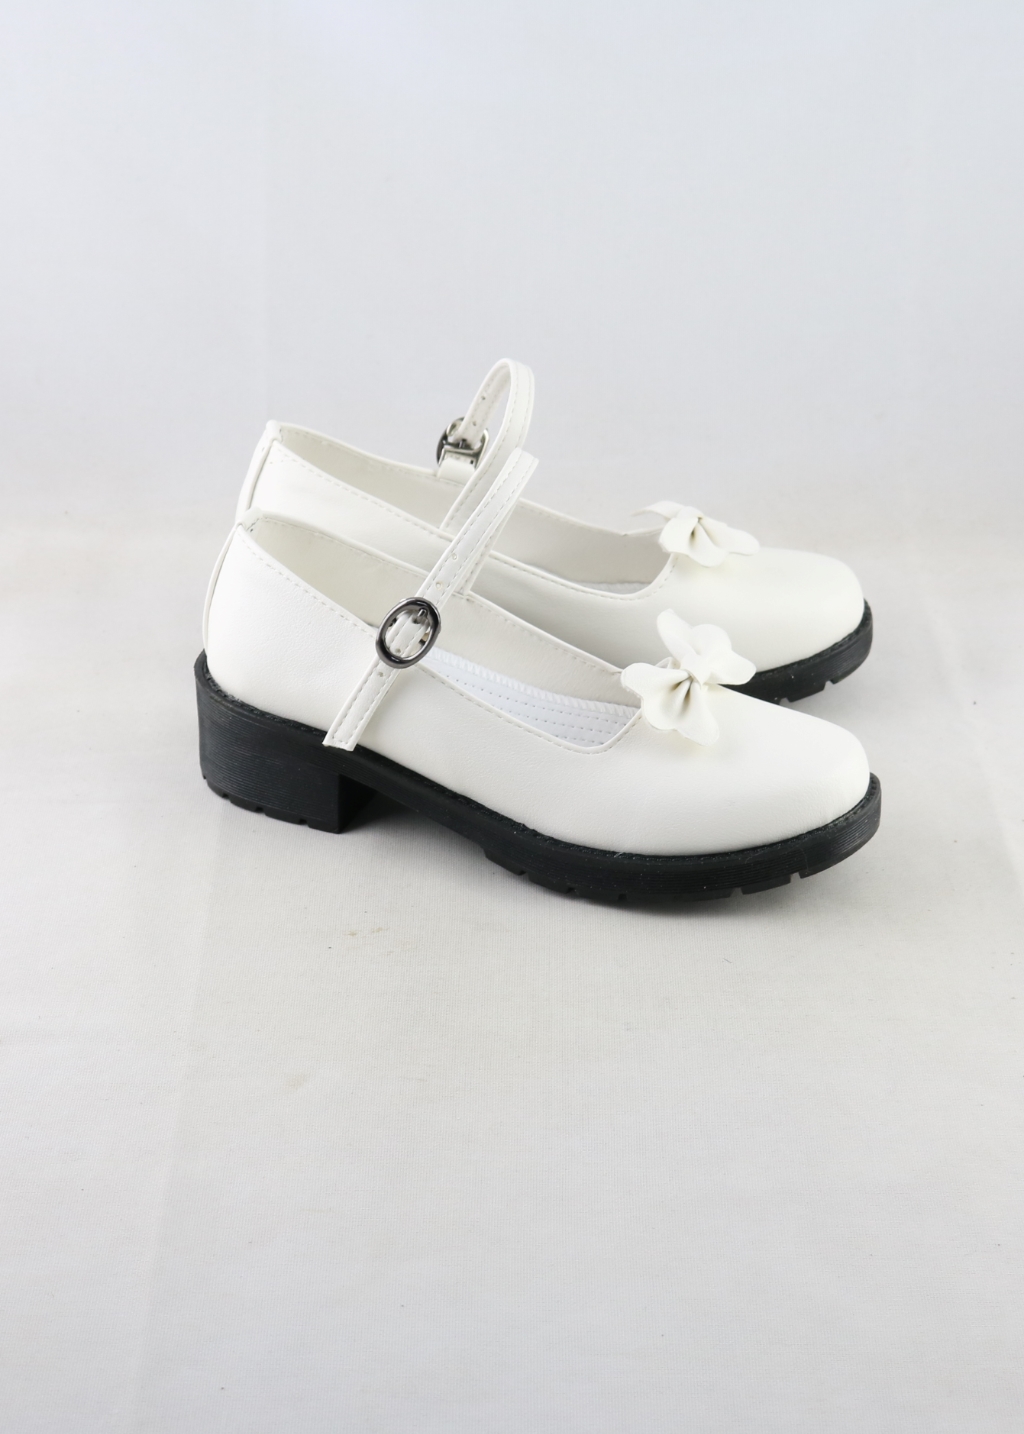 Chihiro Fujisaki Shoes Women Danganronpa Boots Cosplay